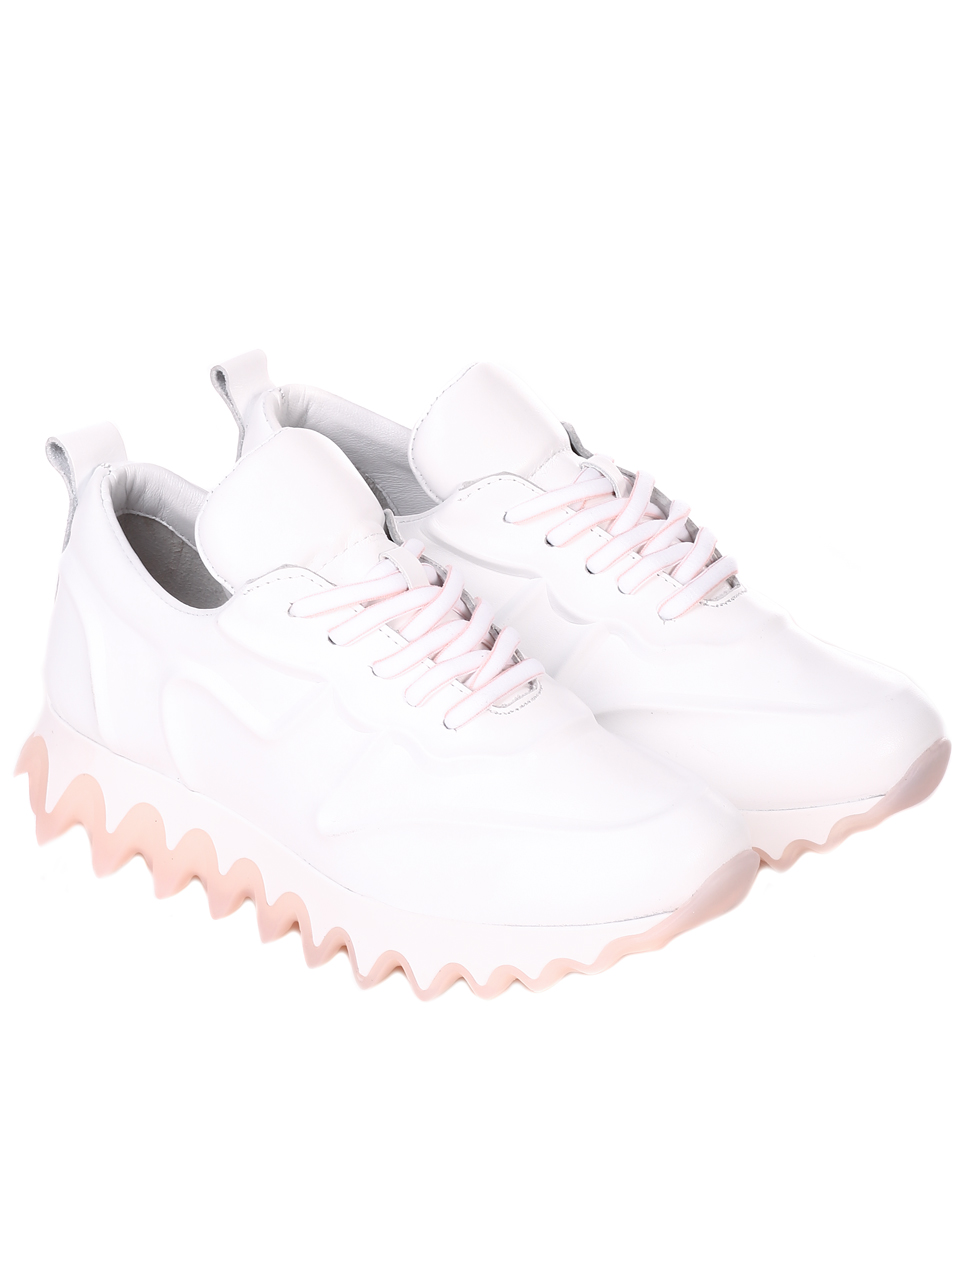 Ежедневни дамски обувки от естествена кожа в бяло 3AT-21770 white